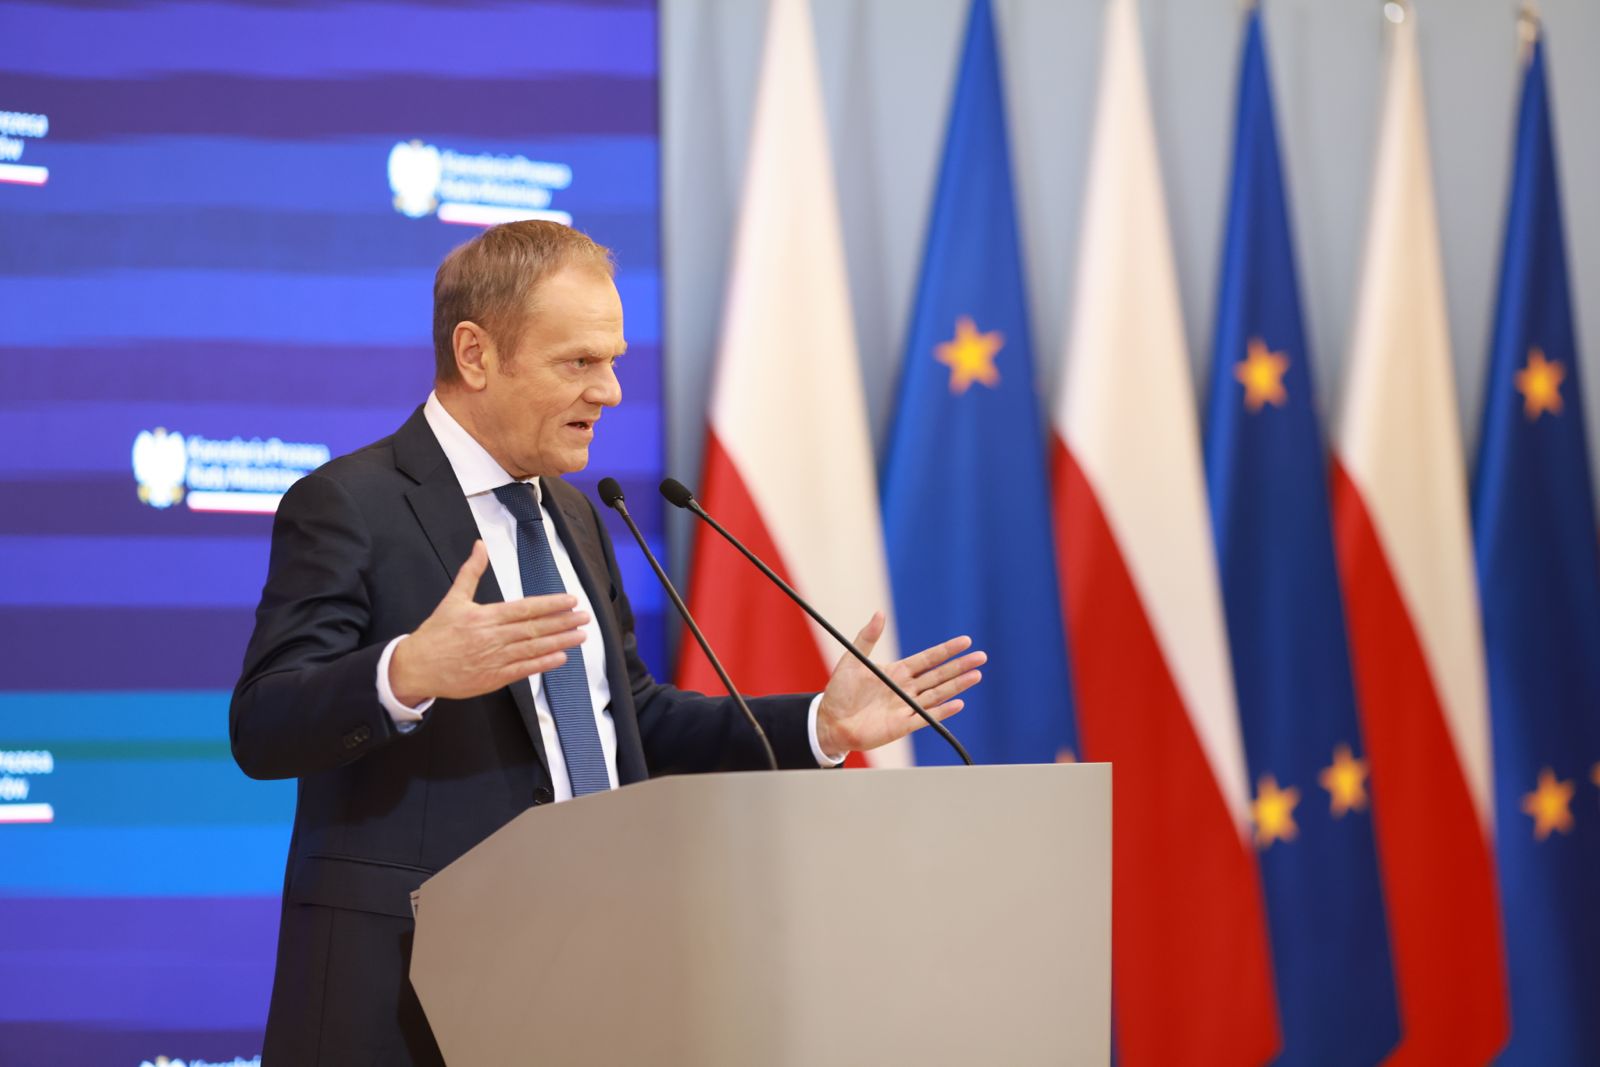 „Przetrwanie cywilizacji zachodniej” zależy od powstrzymania niekontrolowanej migracji – mówi polski premier Tusk